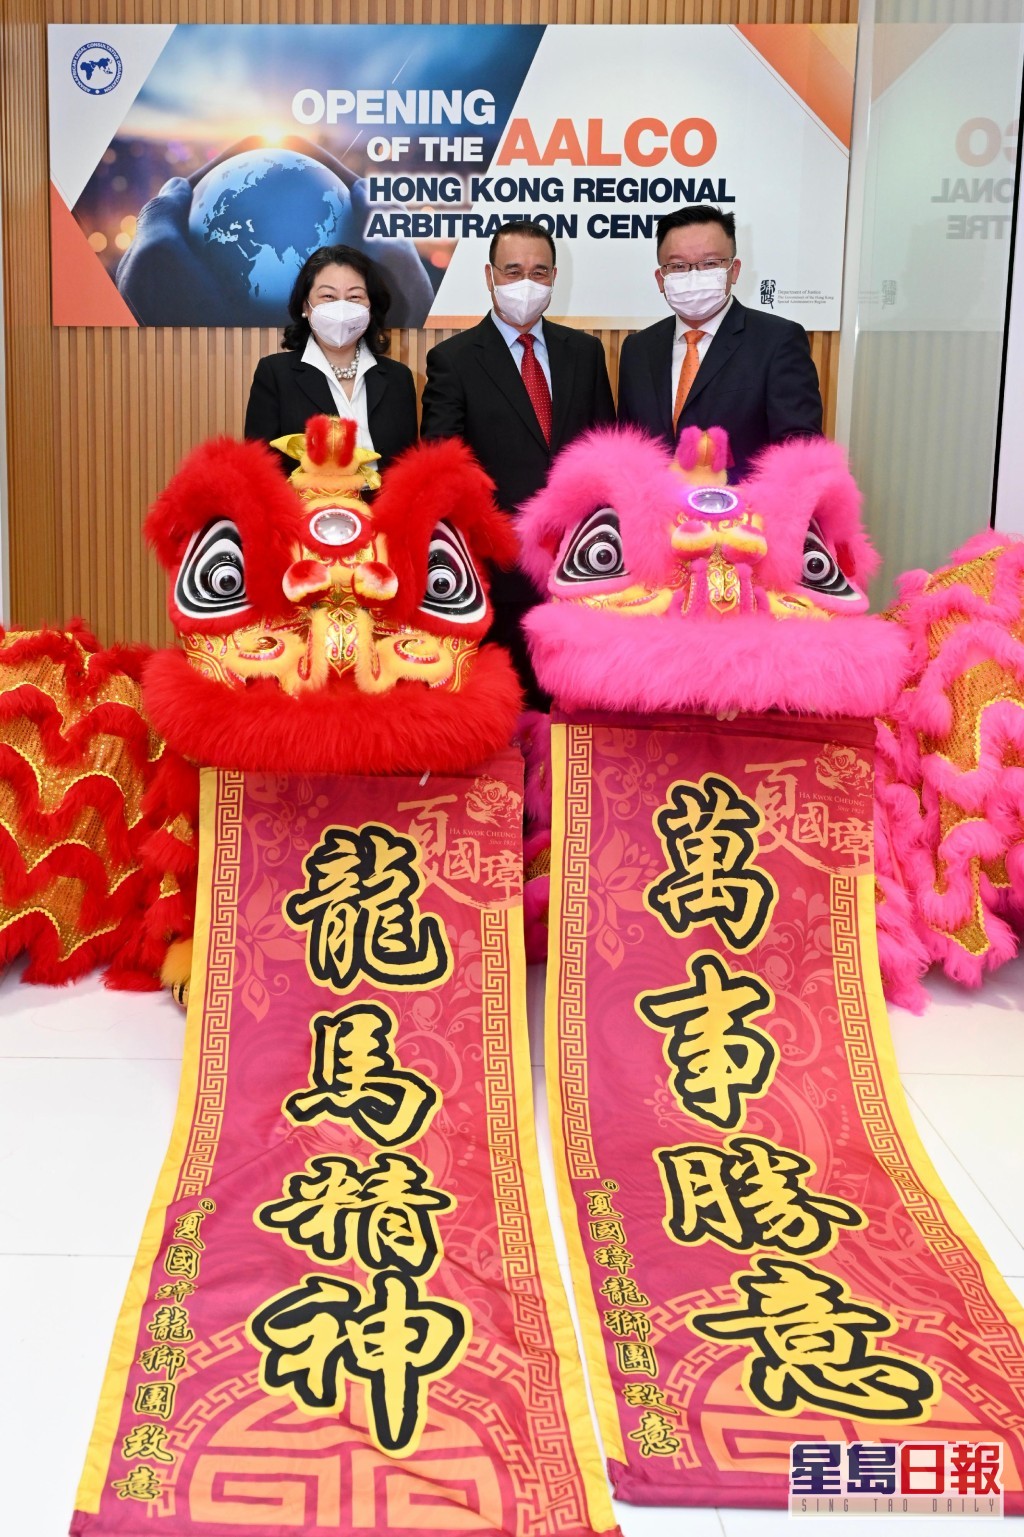 左起郑若骅、刘光源和亚非法协香港区域仲裁中心主任陈晓峰出席开幕典礼。图:政府新闻处